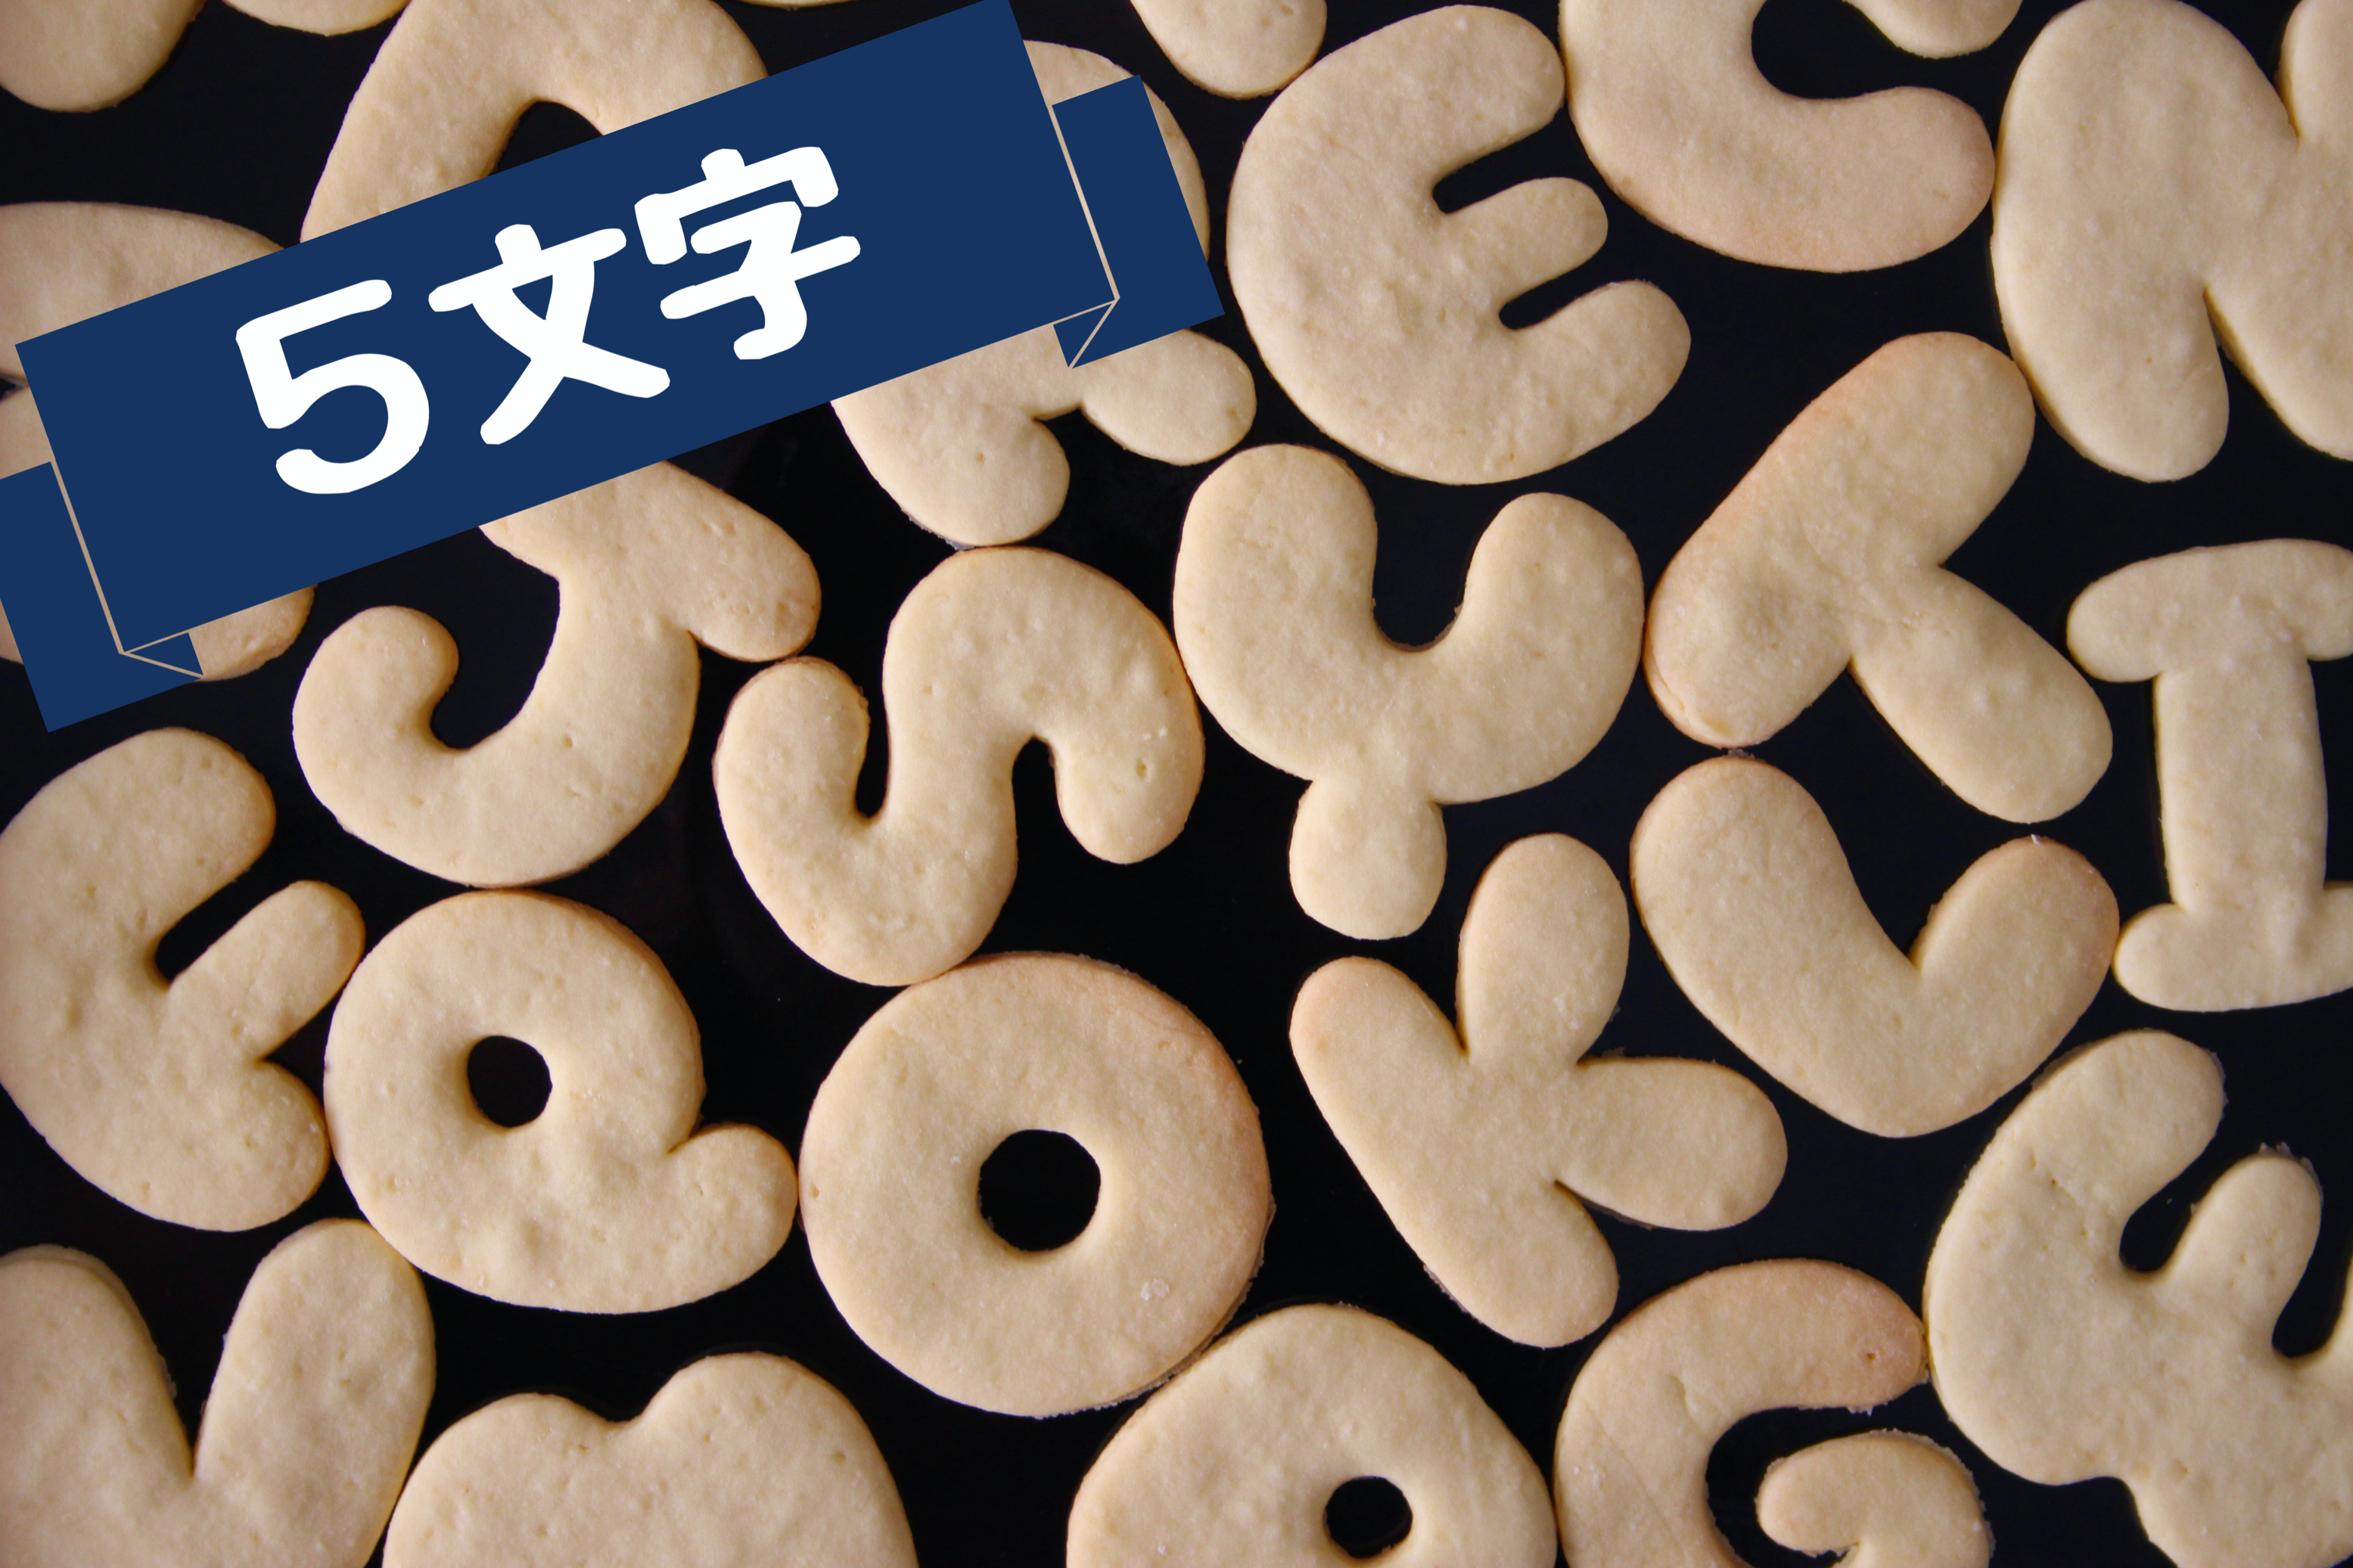 5文字 10 可愛いアルファベット抜き型 Cookies Stamp